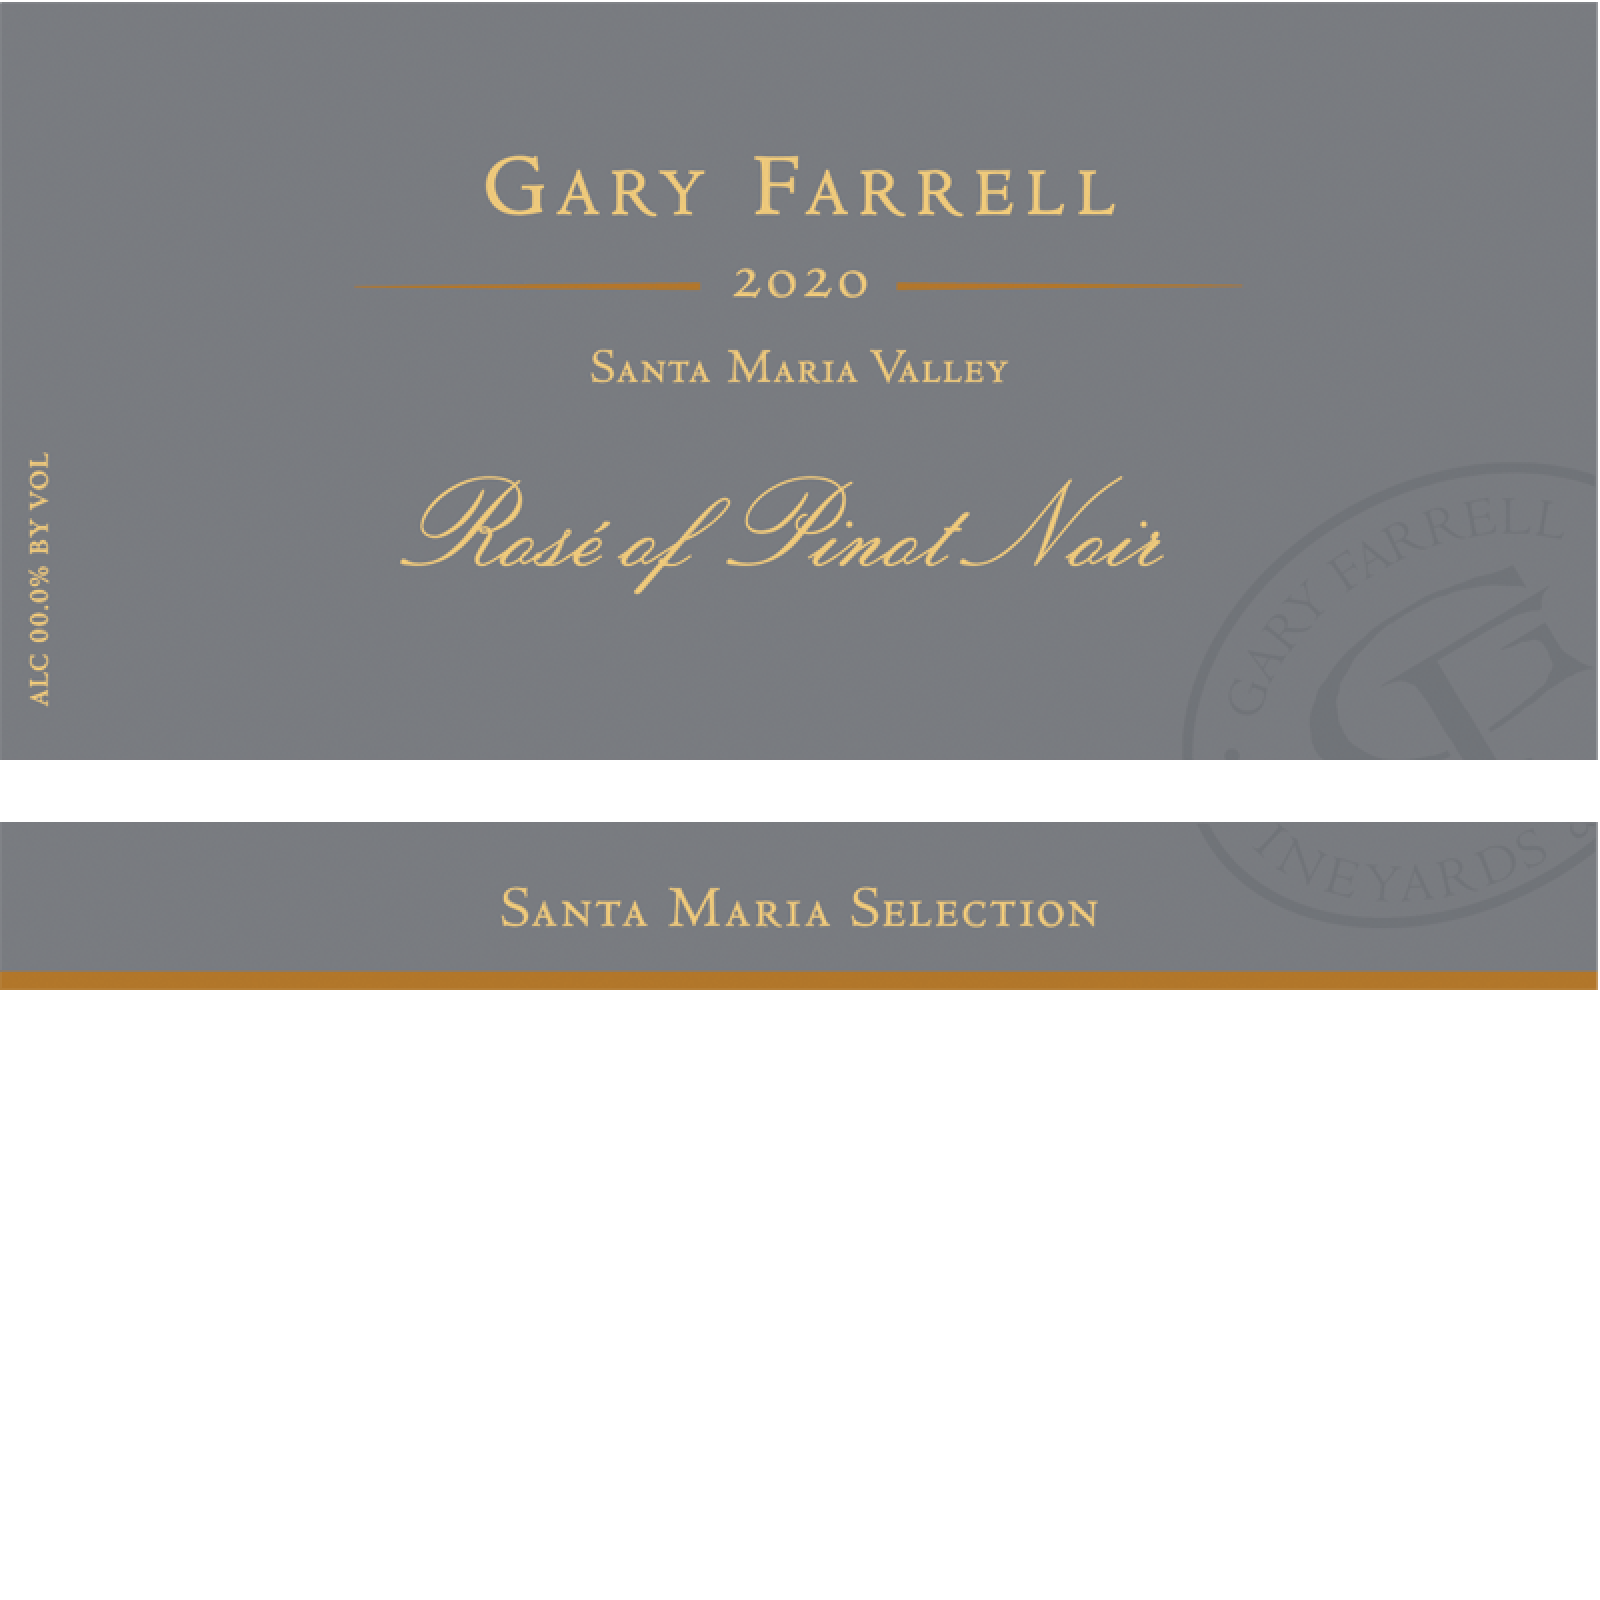 Gary Farrell Rose of Pinot Noir 2020